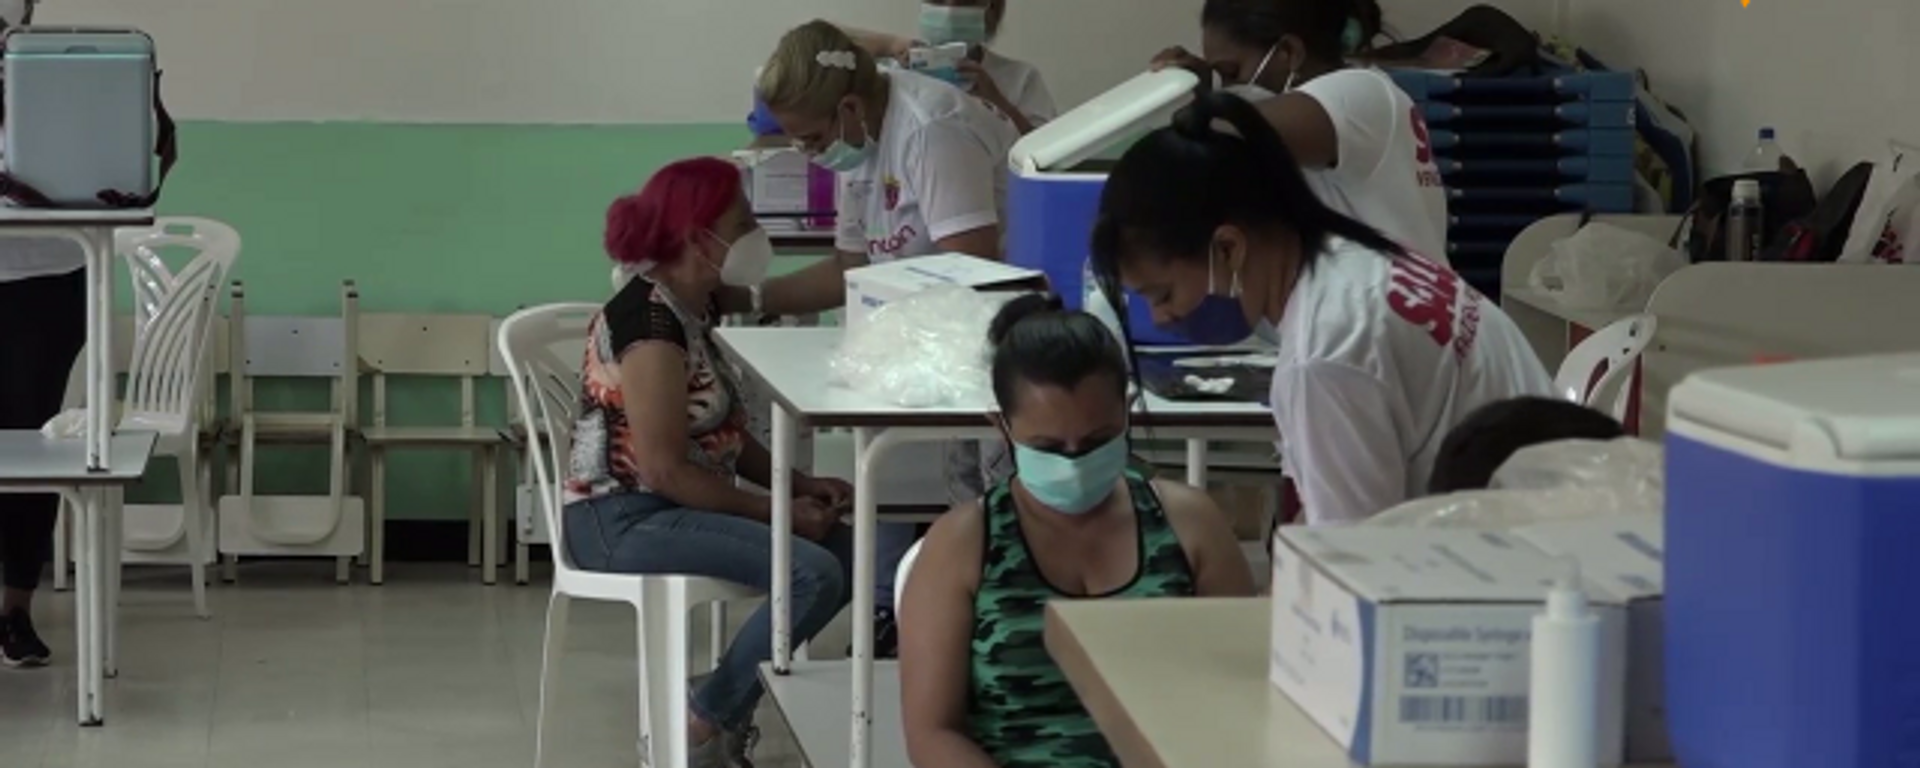 Venezuela inicia inmunización con la vacuna cubana Abdala contra el COVID-19 - Sputnik Mundo, 1920, 28.06.2021